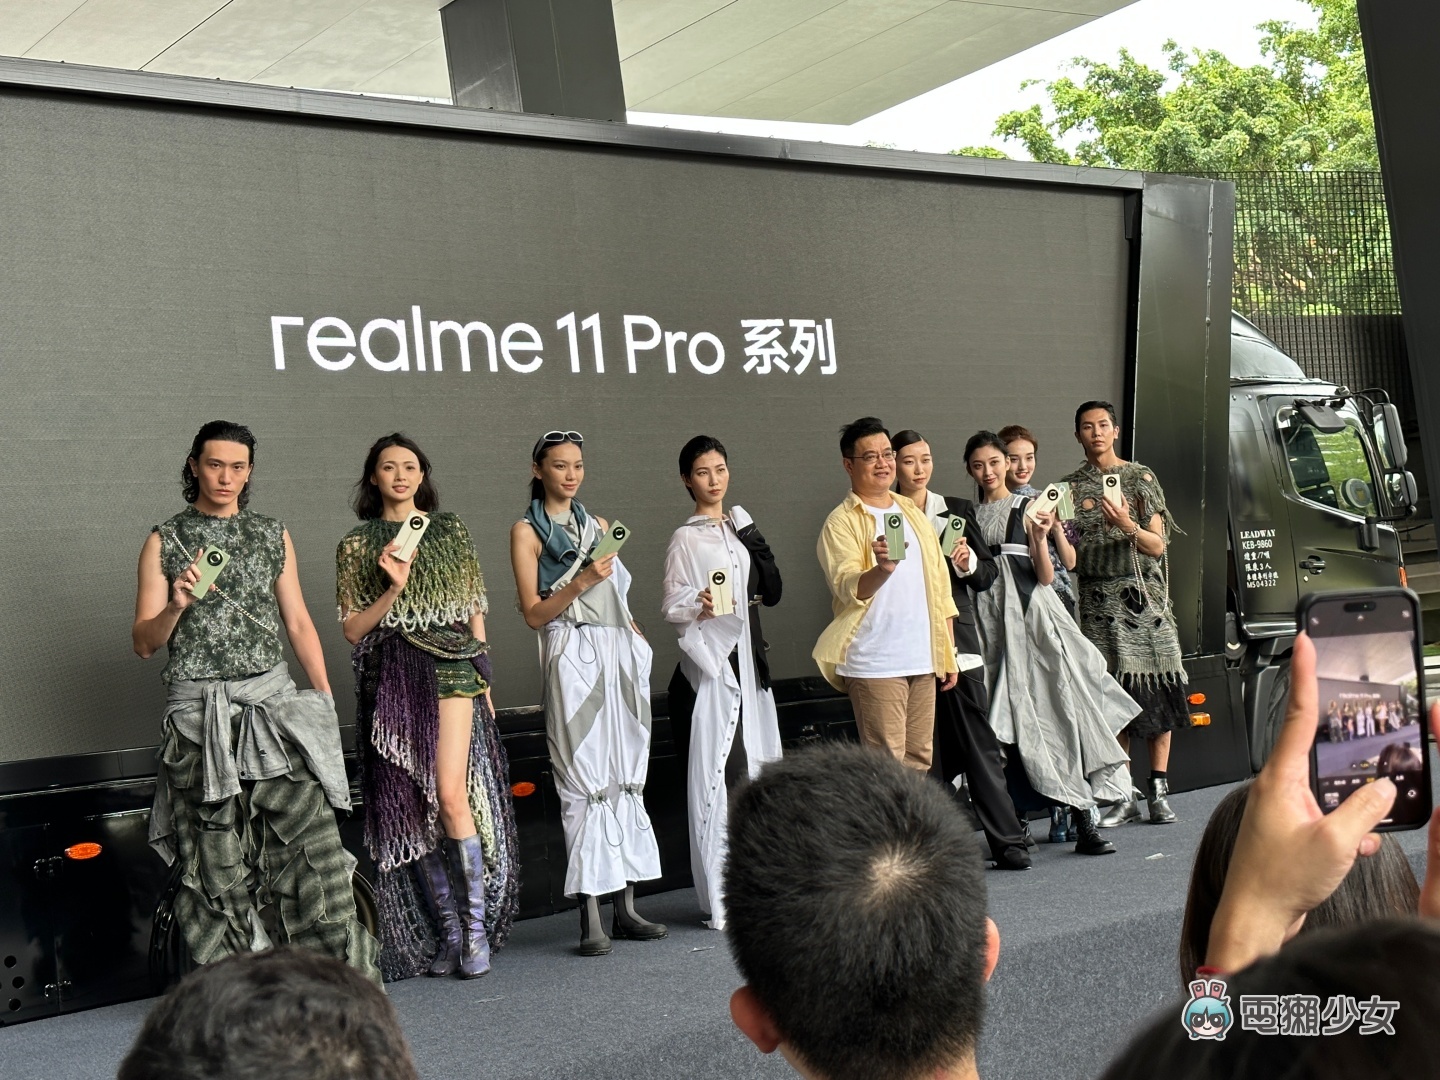 出門｜realme 11 Pro 系列登場！融入精品級工藝，最低新台幣 12,990 元就能入手